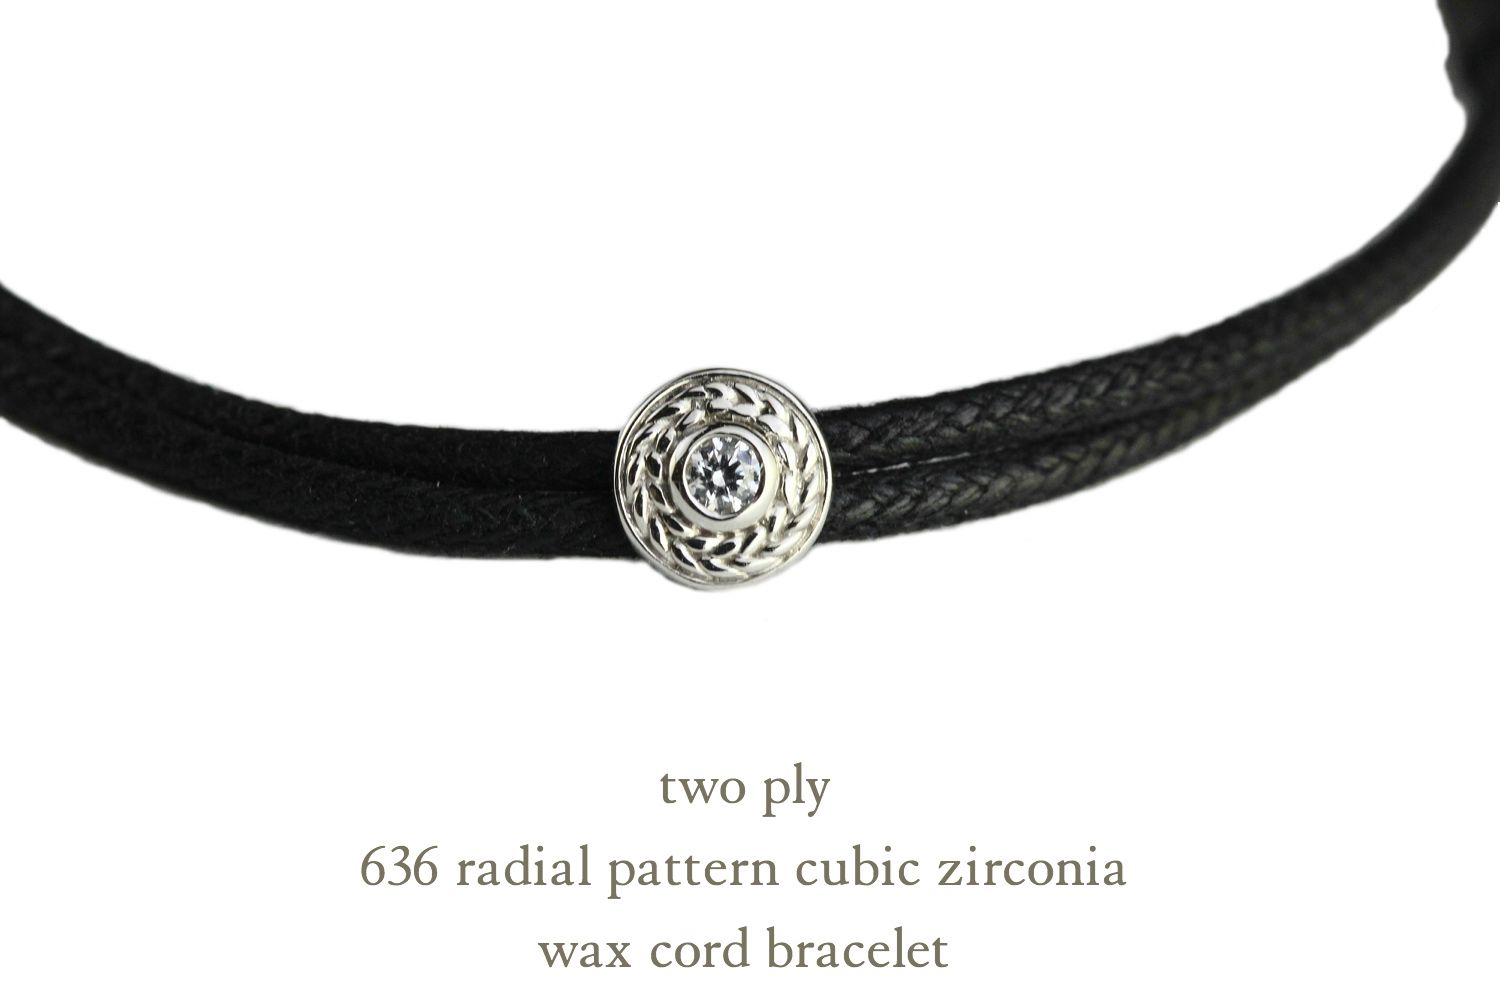 トゥー プライ 636 ラジアル パターン ワックスコード 紐ブレスレット シルバー925,two ply Radial Pattern Wax Cord Bracelet Silver